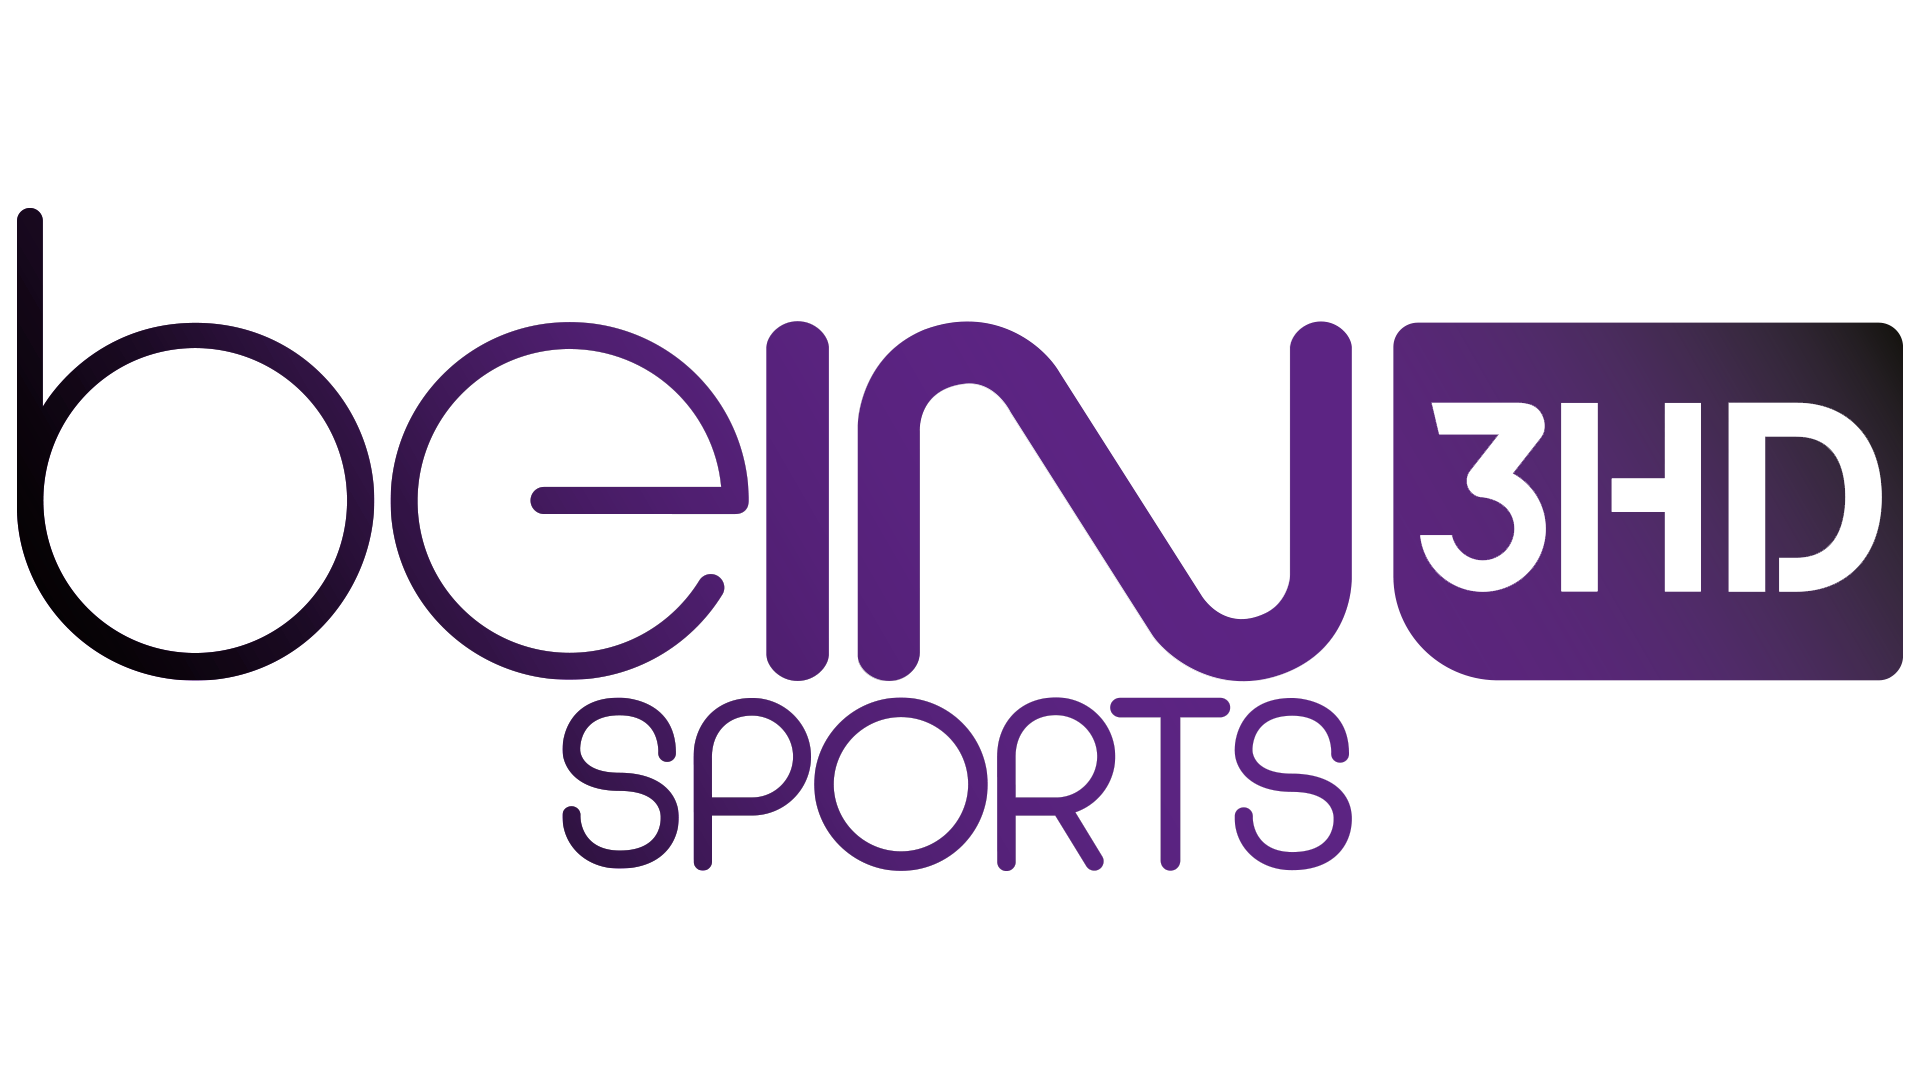 Bein. Каналы Bein Sports. Bein Sport 2 Live. Bein Sport logo. 3 sport 2 live